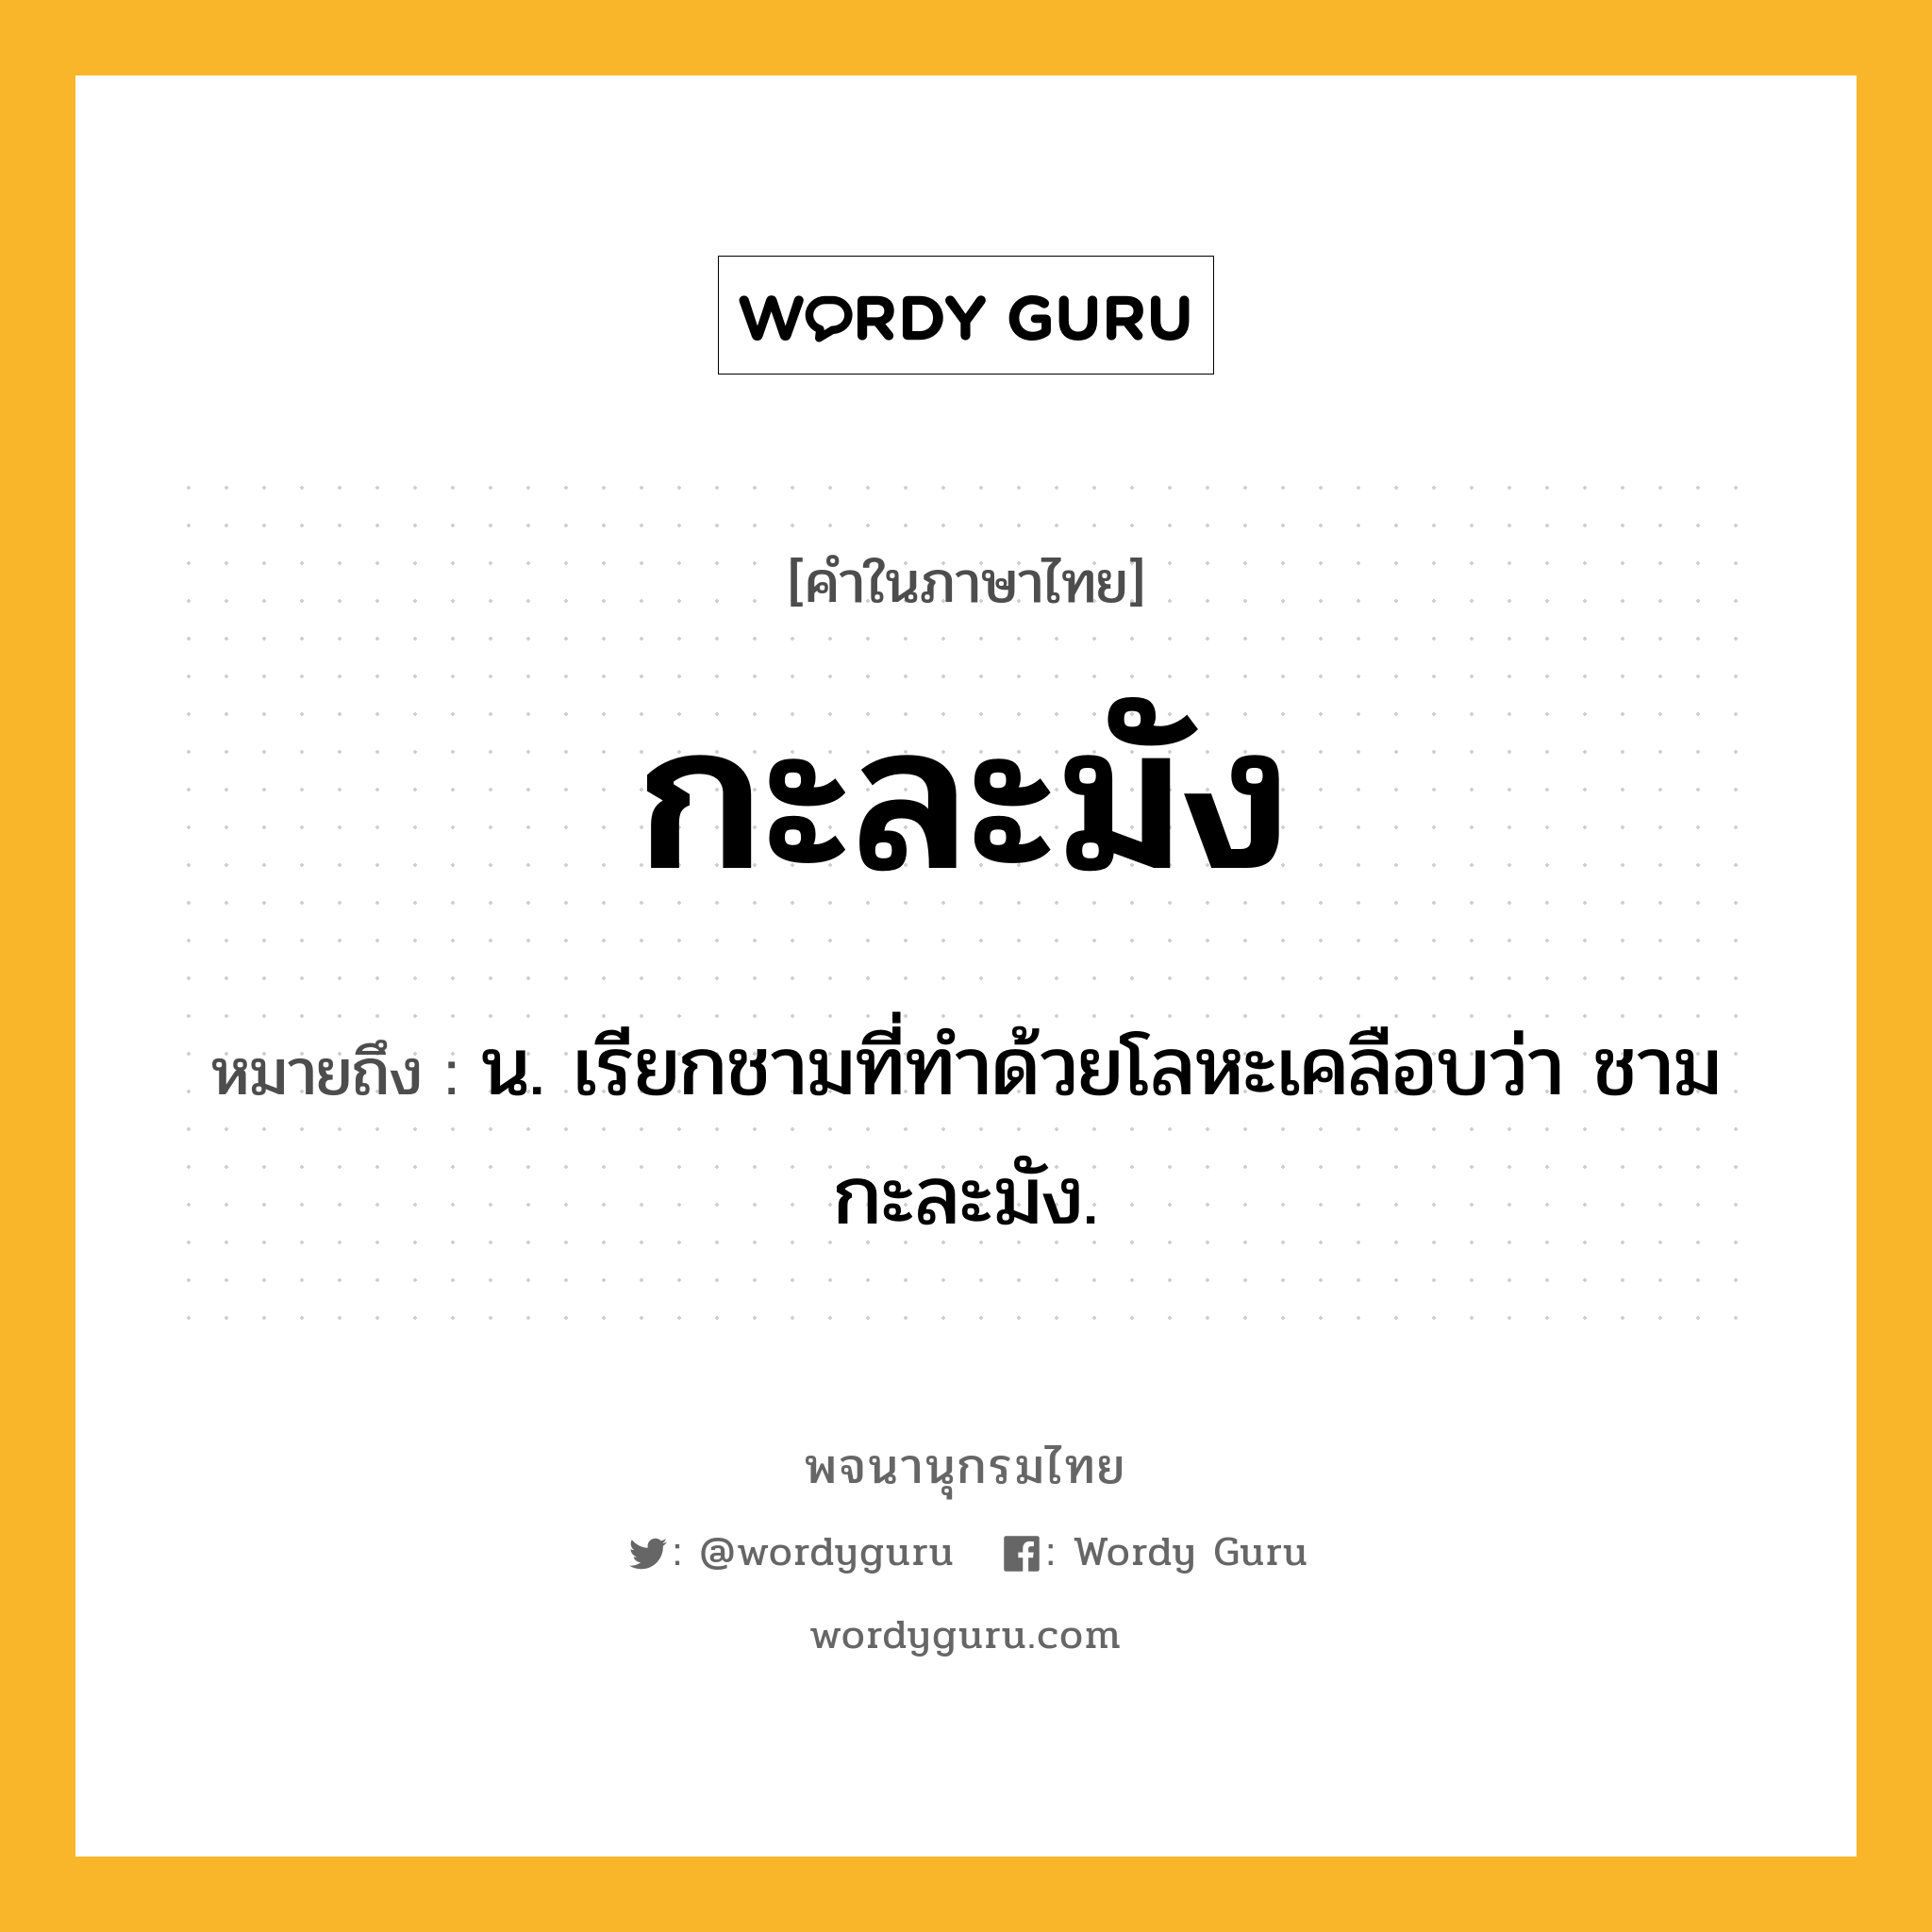 กะละมัง หมายถึงอะไร?, คำในภาษาไทย กะละมัง หมายถึง น. เรียกชามที่ทําด้วยโลหะเคลือบว่า ชามกะละมัง.